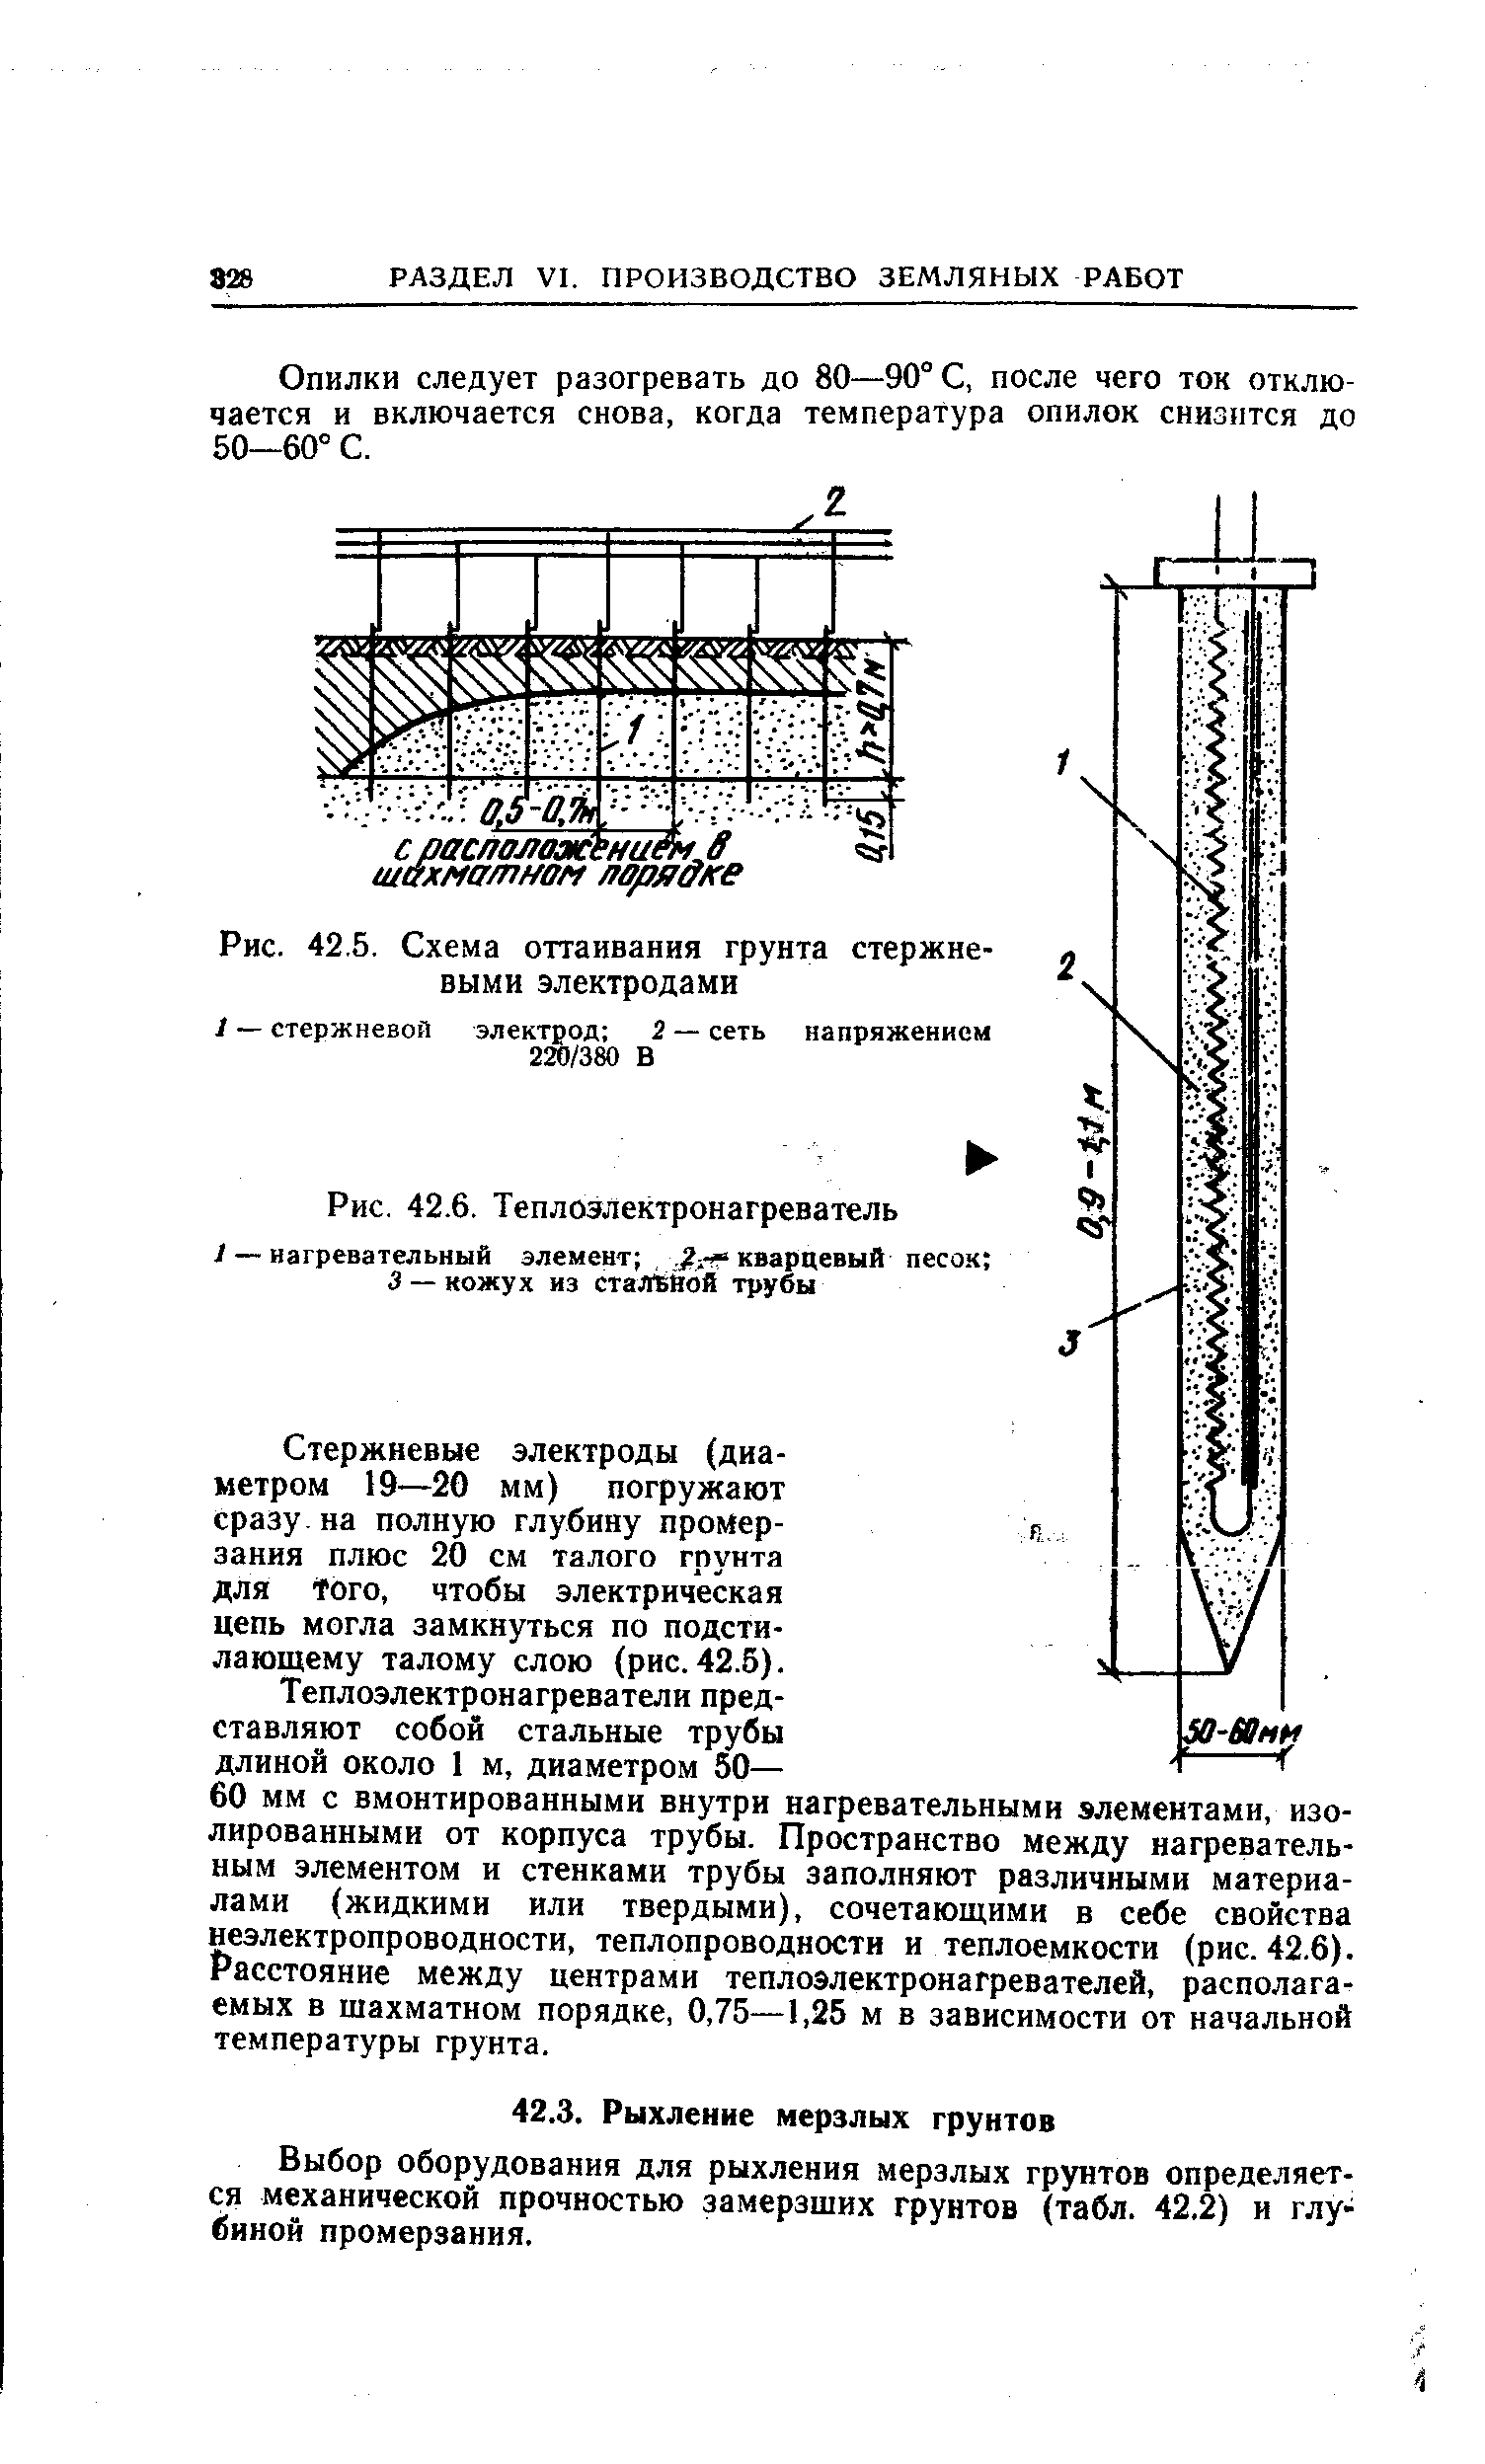 Рис. 42.5, Схема оттаивания грунта стержневыми электродами
